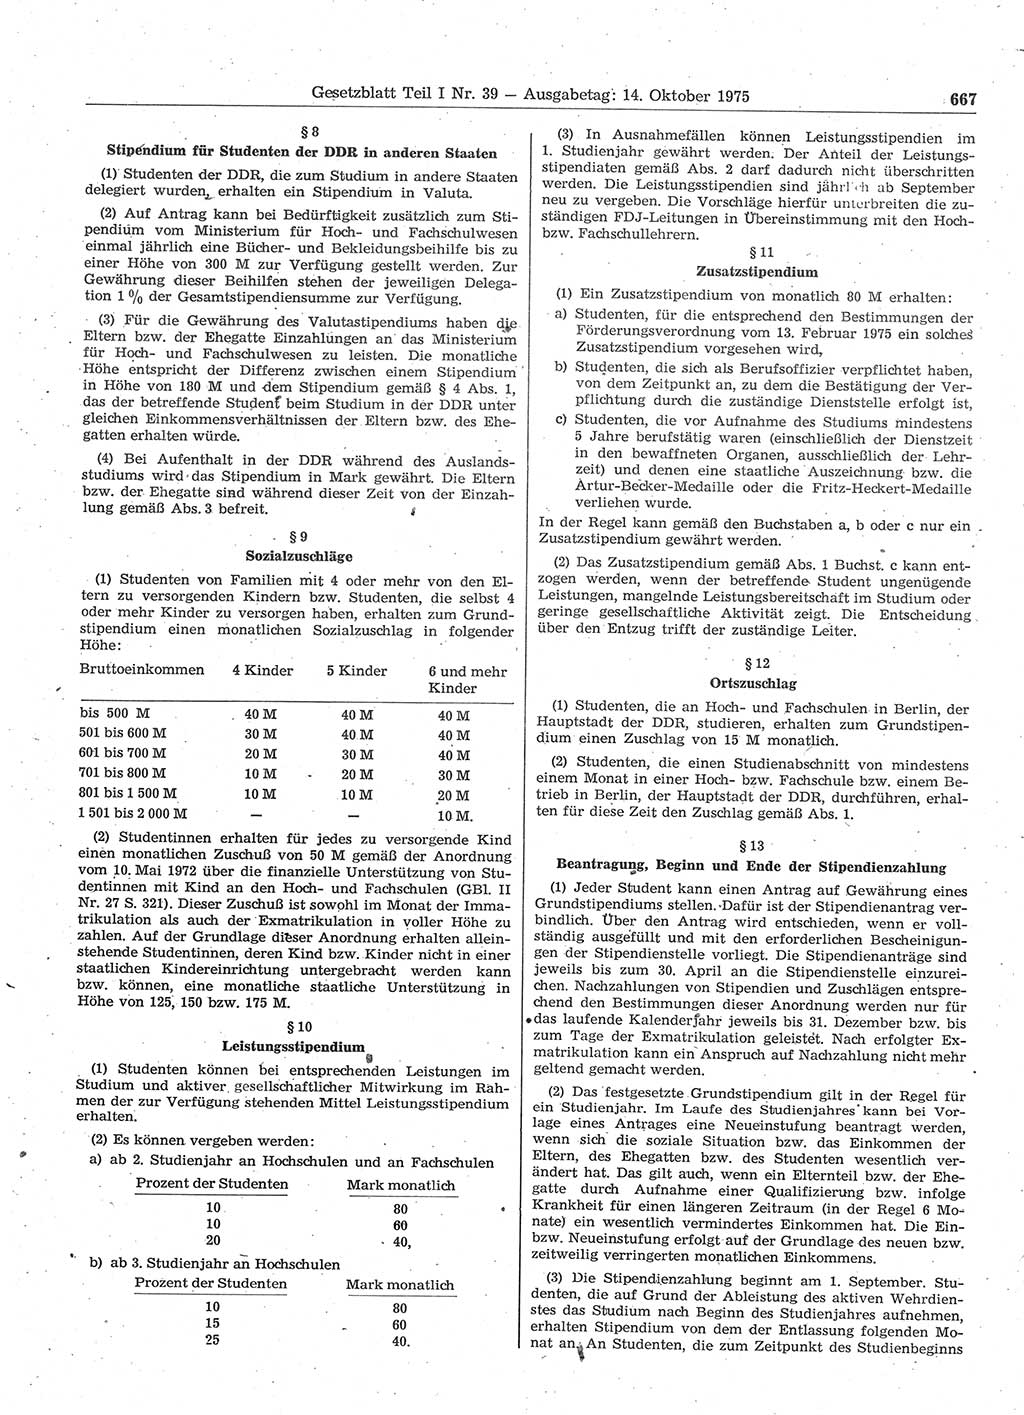 Gesetzblatt (GBl.) der Deutschen Demokratischen Republik (DDR) Teil Ⅰ 1975, Seite 667 (GBl. DDR Ⅰ 1975, S. 667)